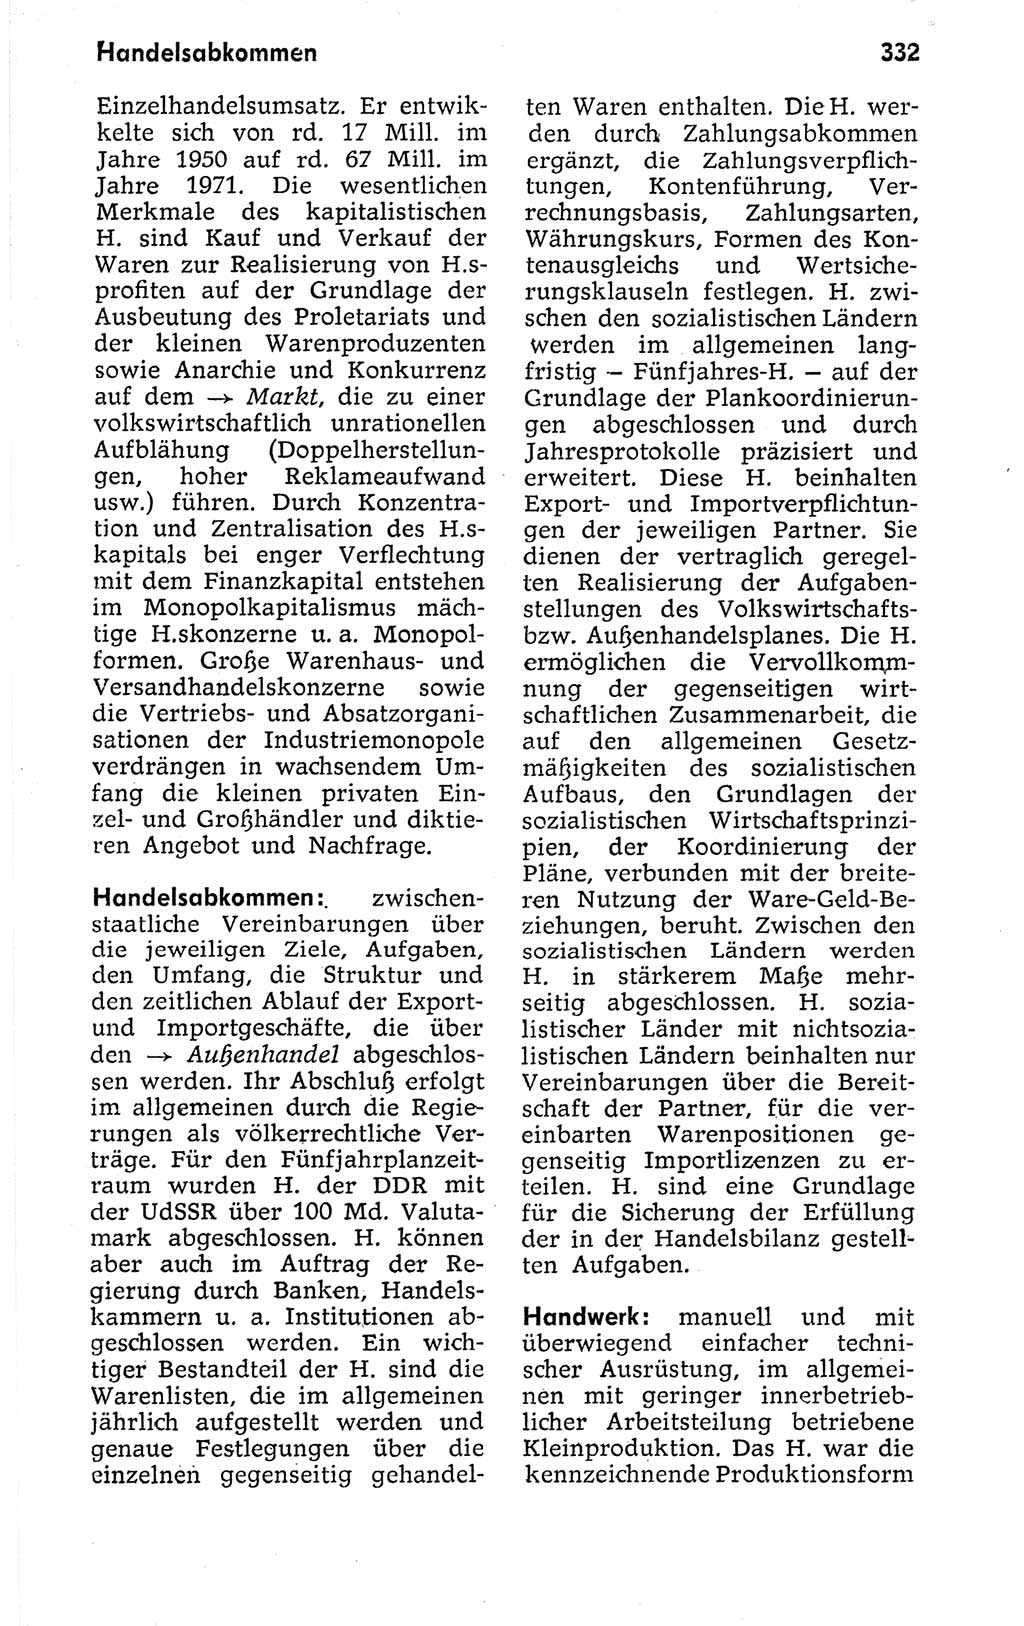 Kleines politisches Wörterbuch [Deutsche Demokratische Republik (DDR)] 1973, Seite 332 (Kl. pol. Wb. DDR 1973, S. 332)